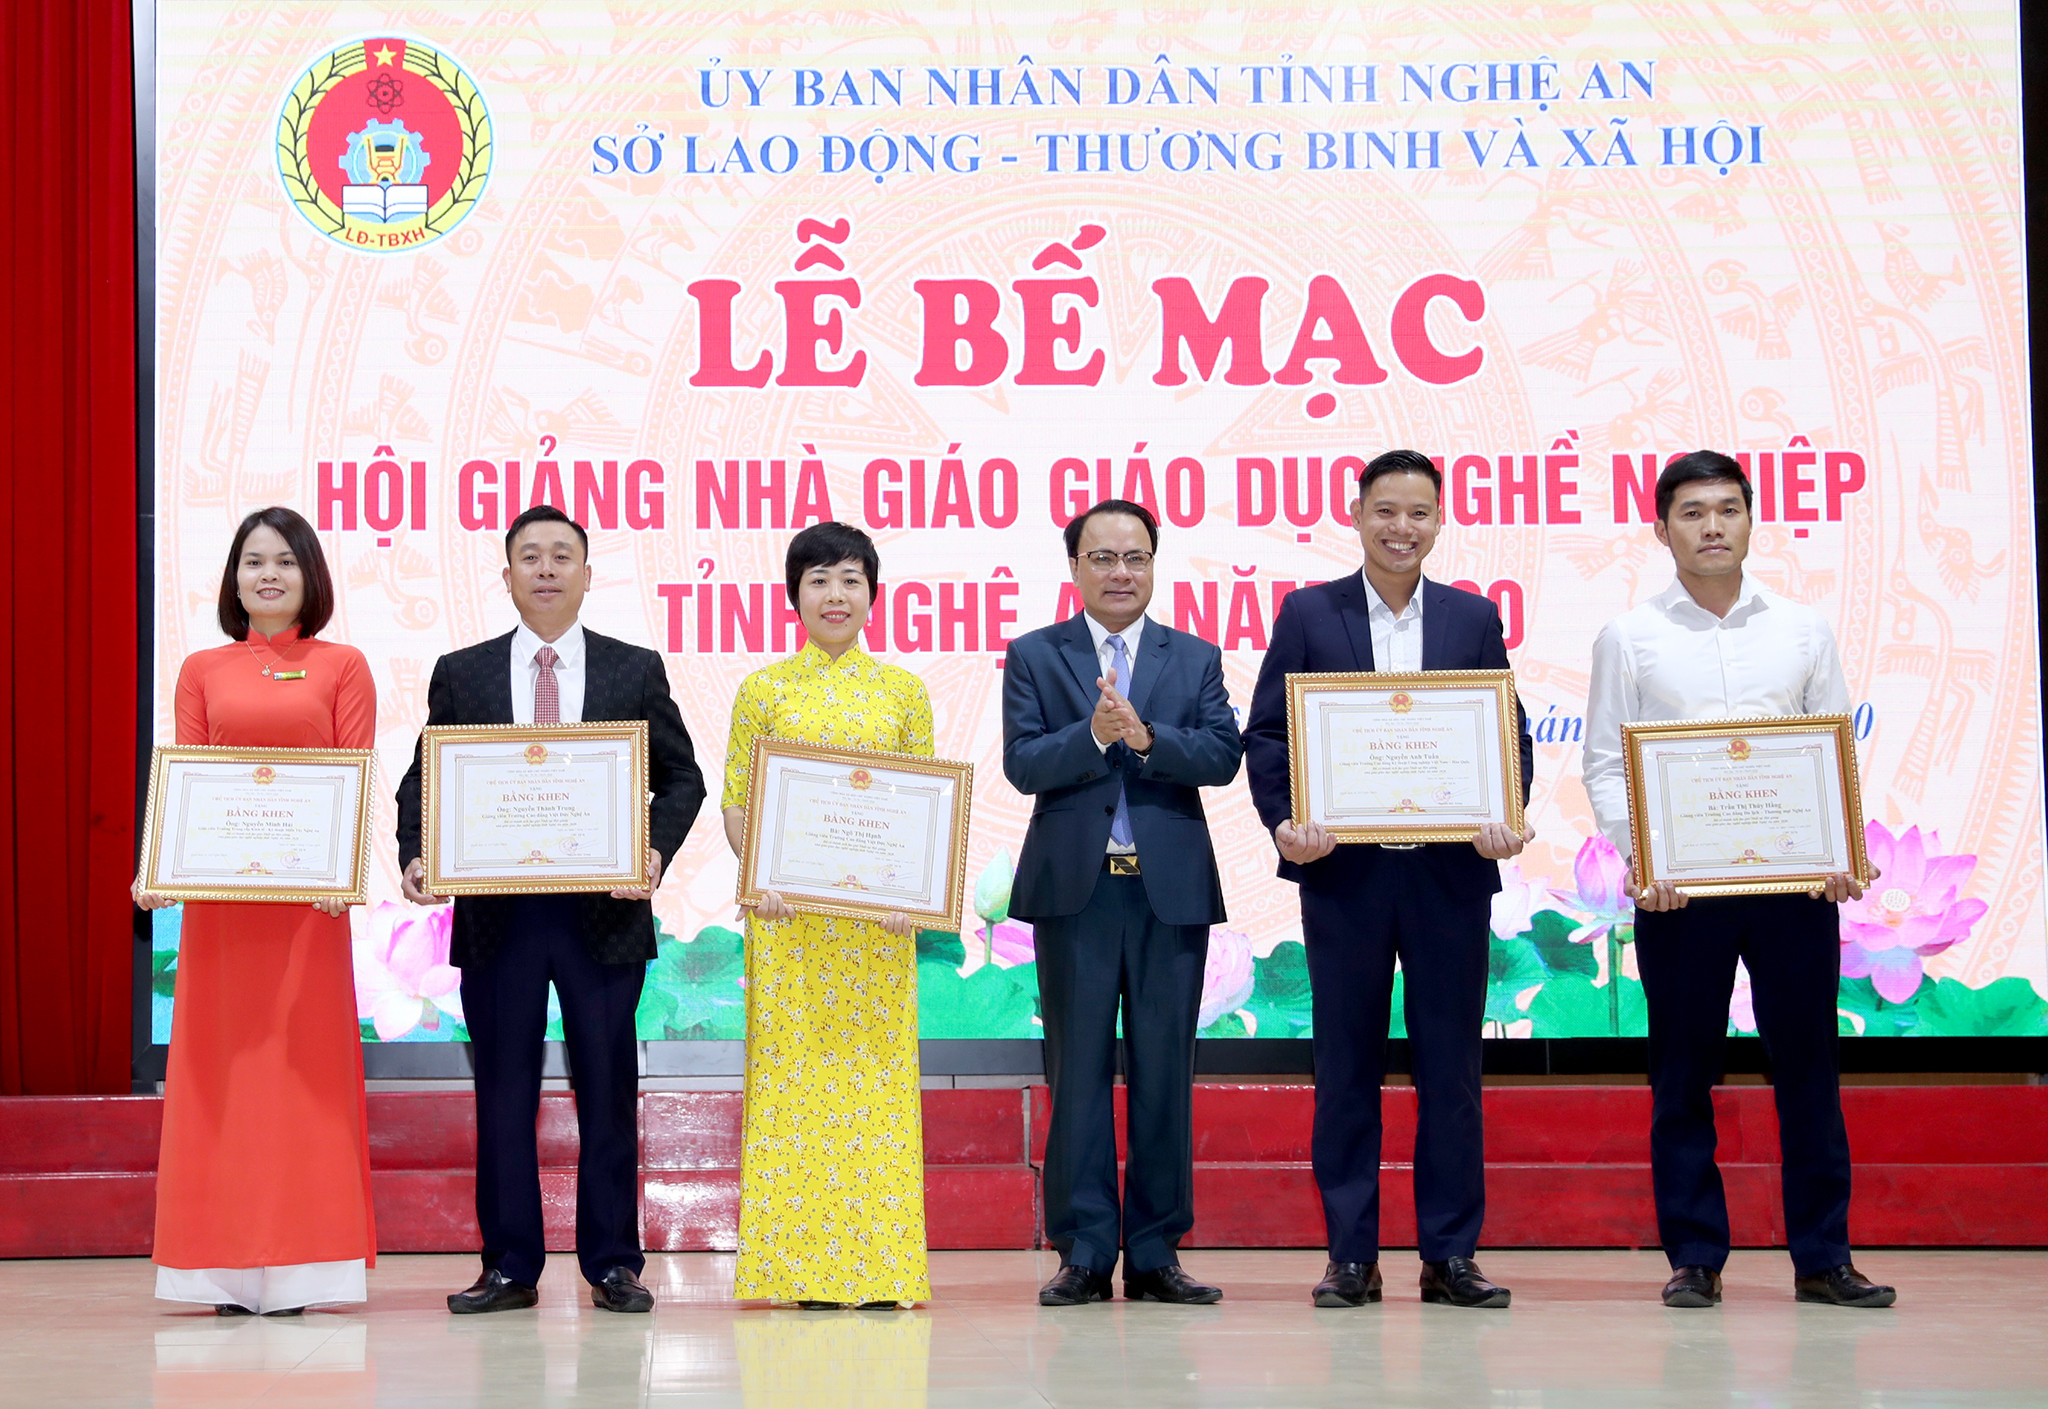 Đồng chí Nguyễn Nam Đình trao giải nhất cho 5 cá nhân xuất sắc. Ảnh: Đức Anh